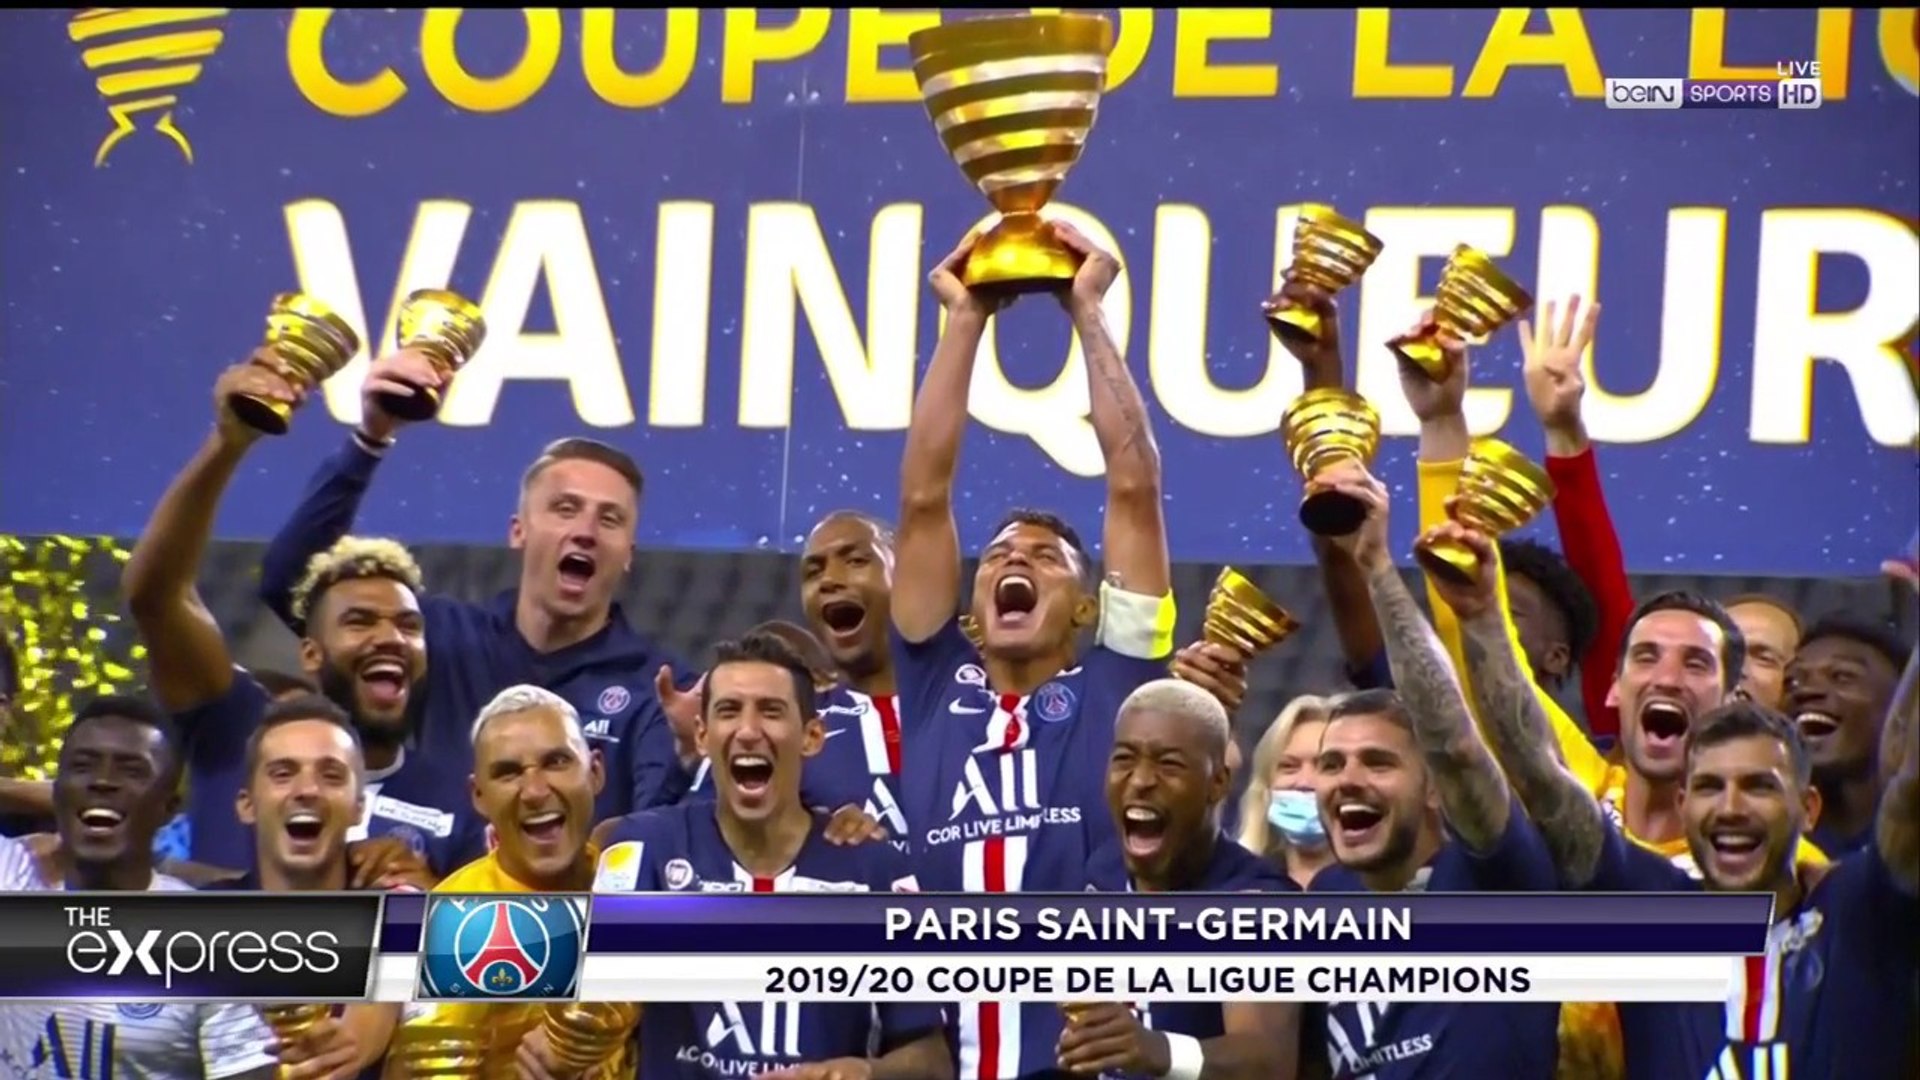 PSG: 2019-20 Coupe de la Ligue Champions - video Dailymotion